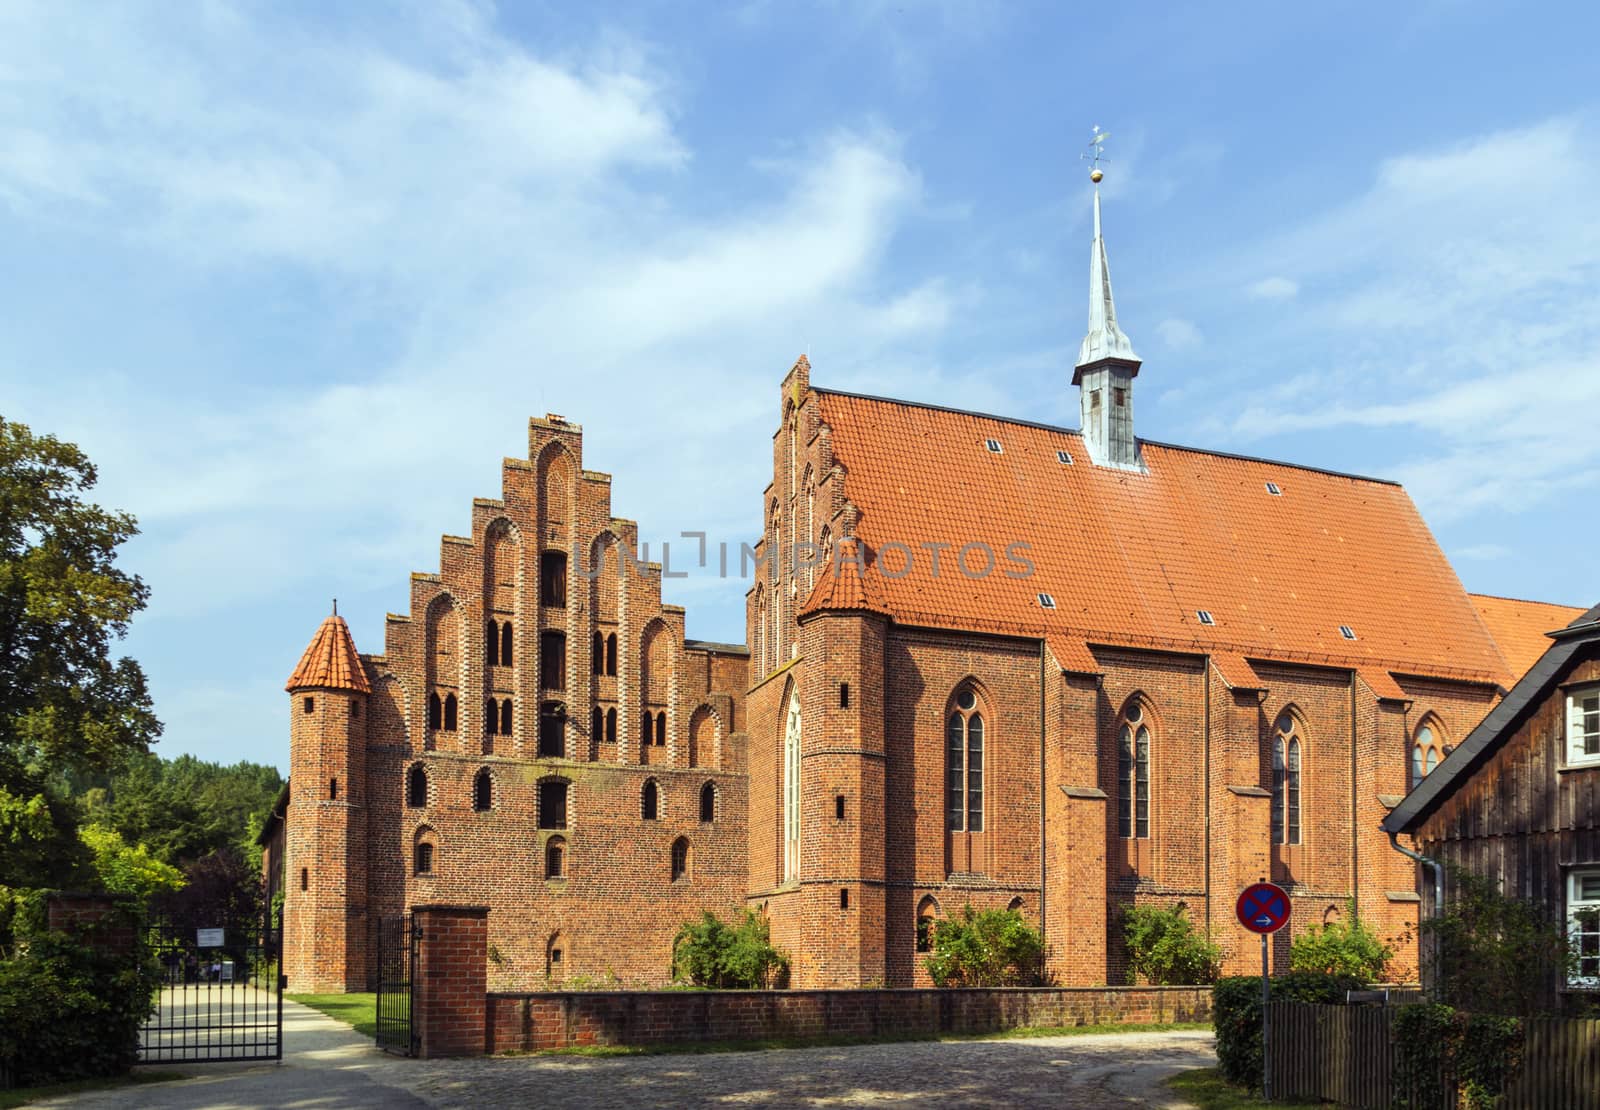 Wienhausen Abbey, Germany by borisb17